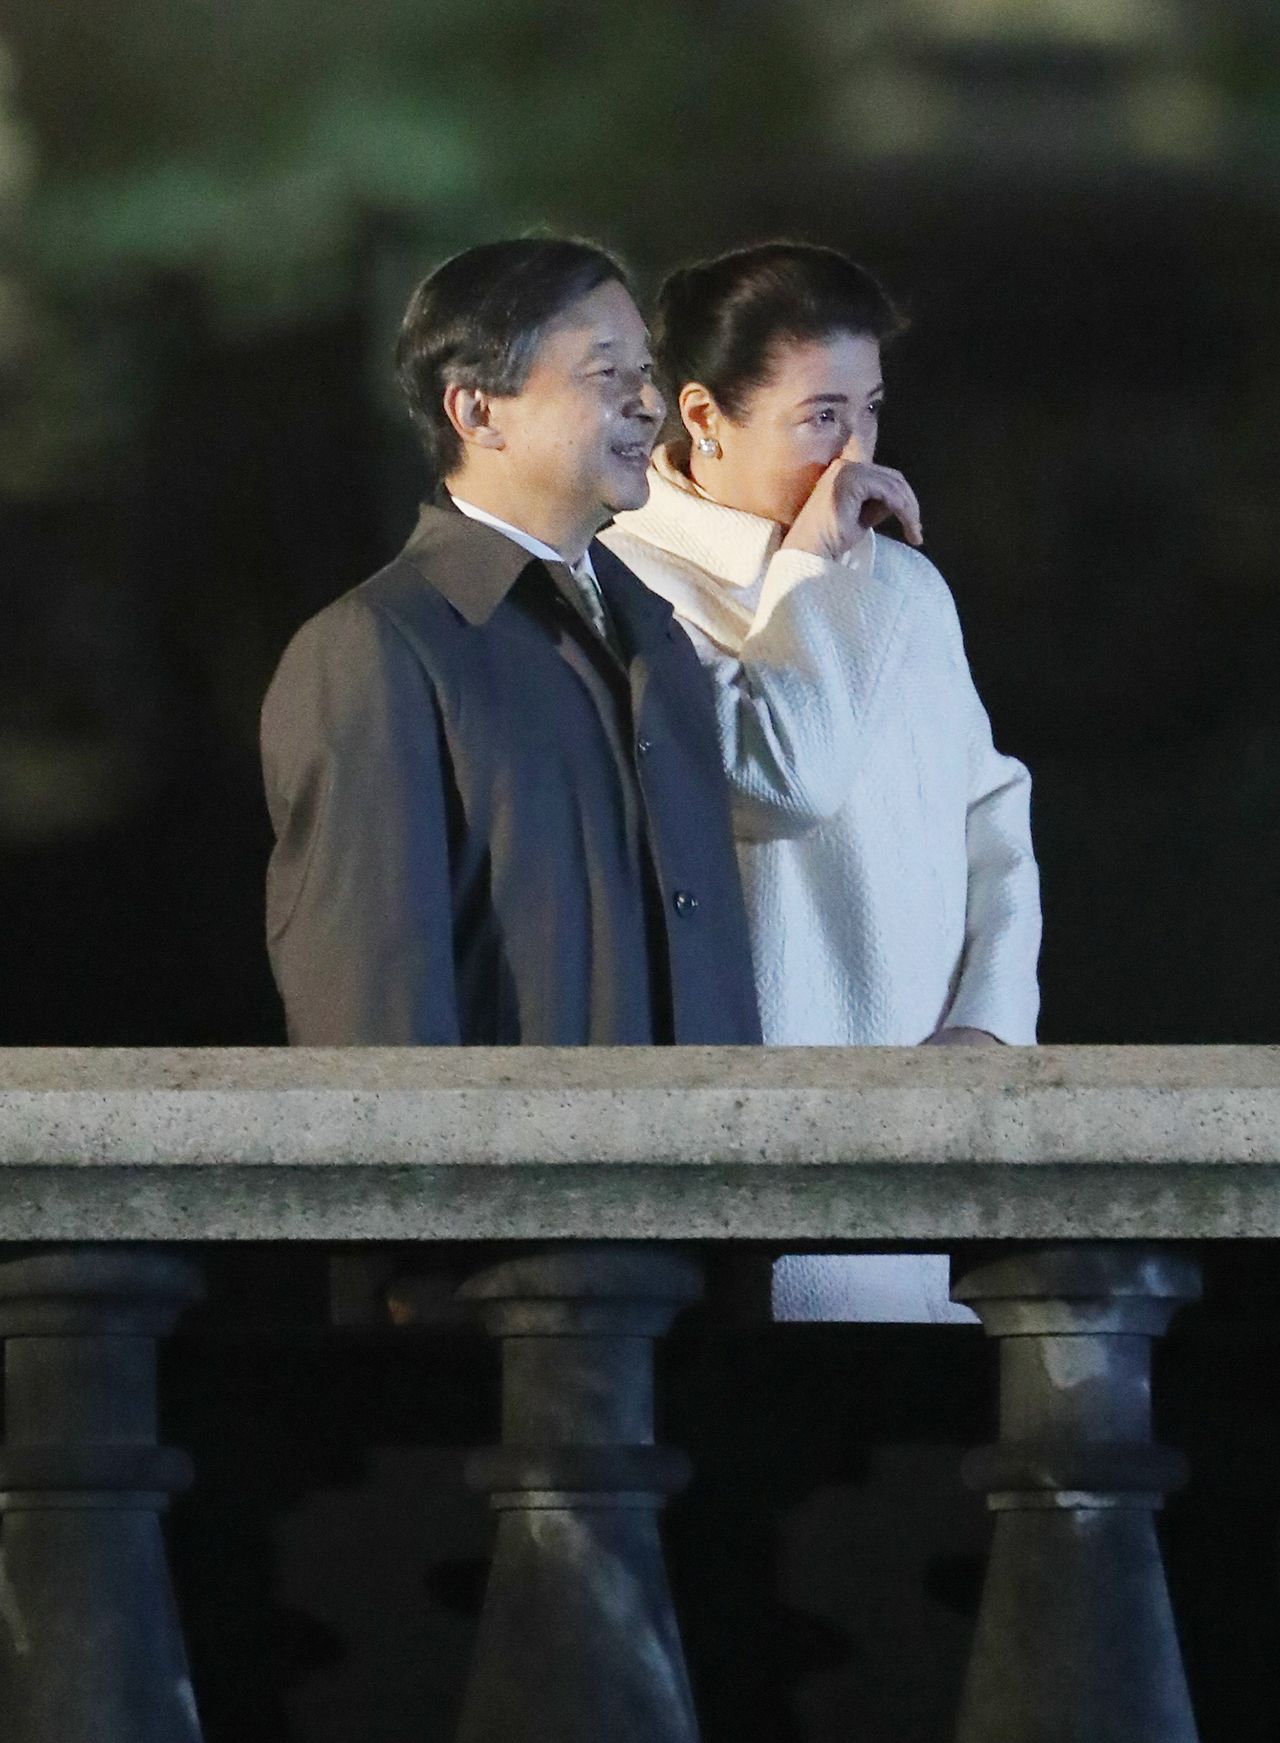 Le 9 novembre 2019, l’empereur Naruhito et l’impératrice Masako ont assisté du haut d’un pont de pierre à une fête organisée en leur honneur devant le palais impérial de Tokyo. A en juger par ce cliché, le spectacle a　visiblement ému l’impératrice jusqu’aux larmes. (Jiji Press, pool photo)o)